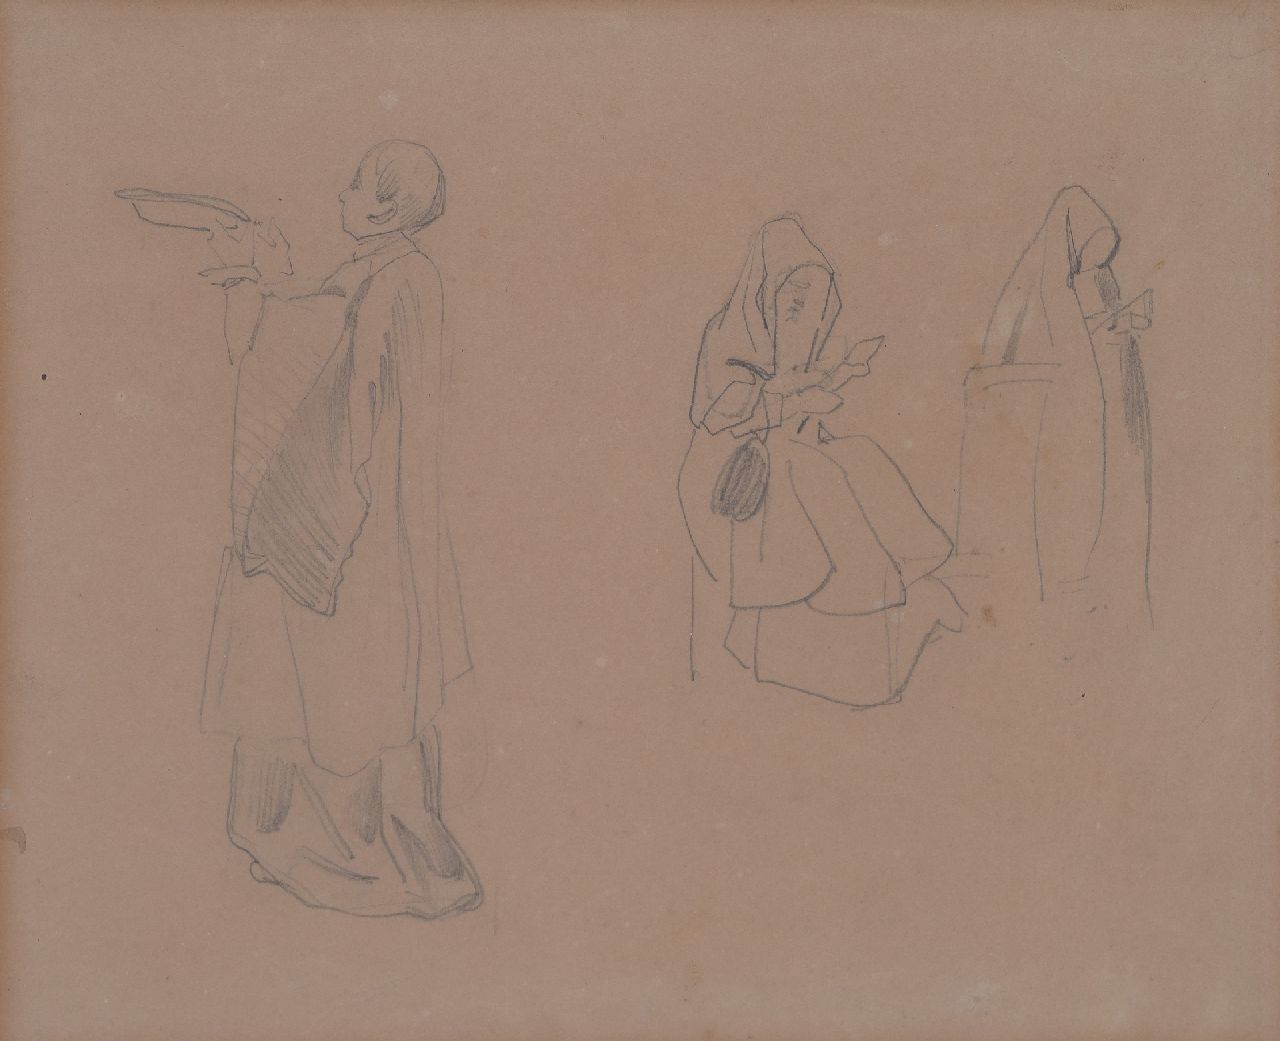 Bosboom J.  | Johannes Bosboom | Aquarellen en tekeningen te koop aangeboden | Studie van kloosterling en nonnen, potlood op papier 20,8 x 26,1 cm